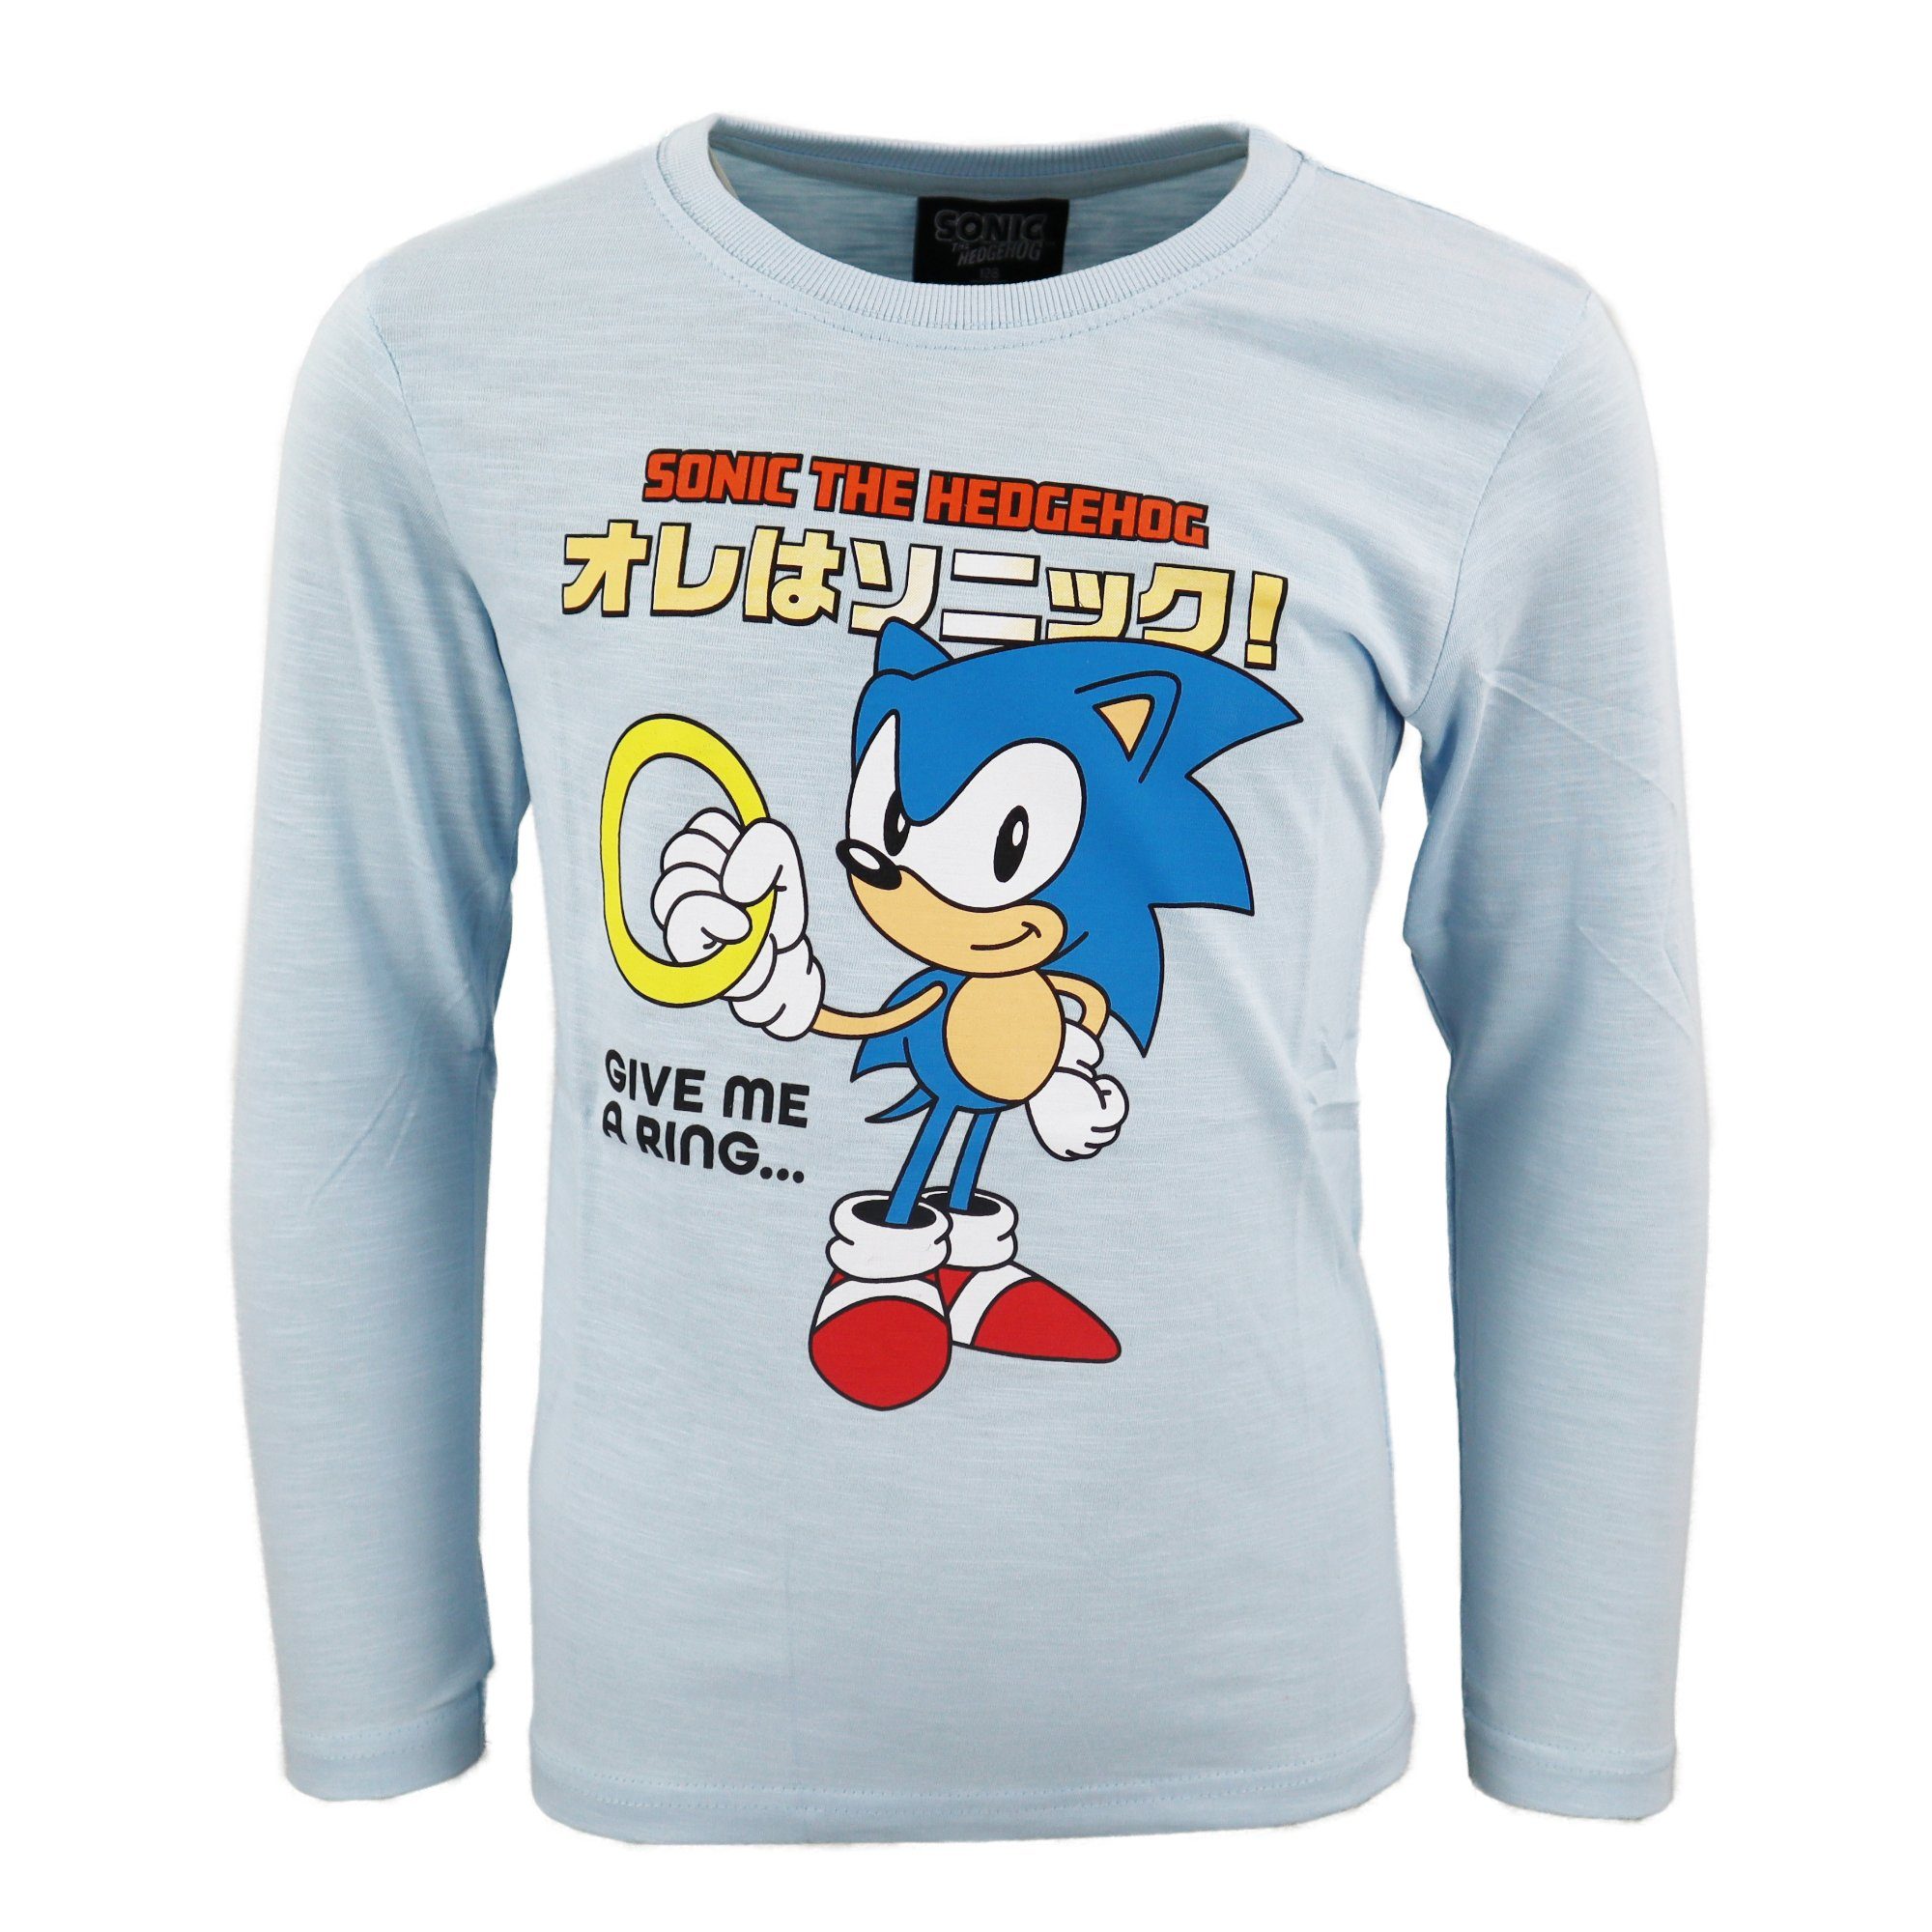 Sonic The Hedgehog Langarmshirt Sonic The Hedgehog Kinder Junge langarm Shirt Gr. 104 bis 152 Blau, 100% Baumwolle Hellblau